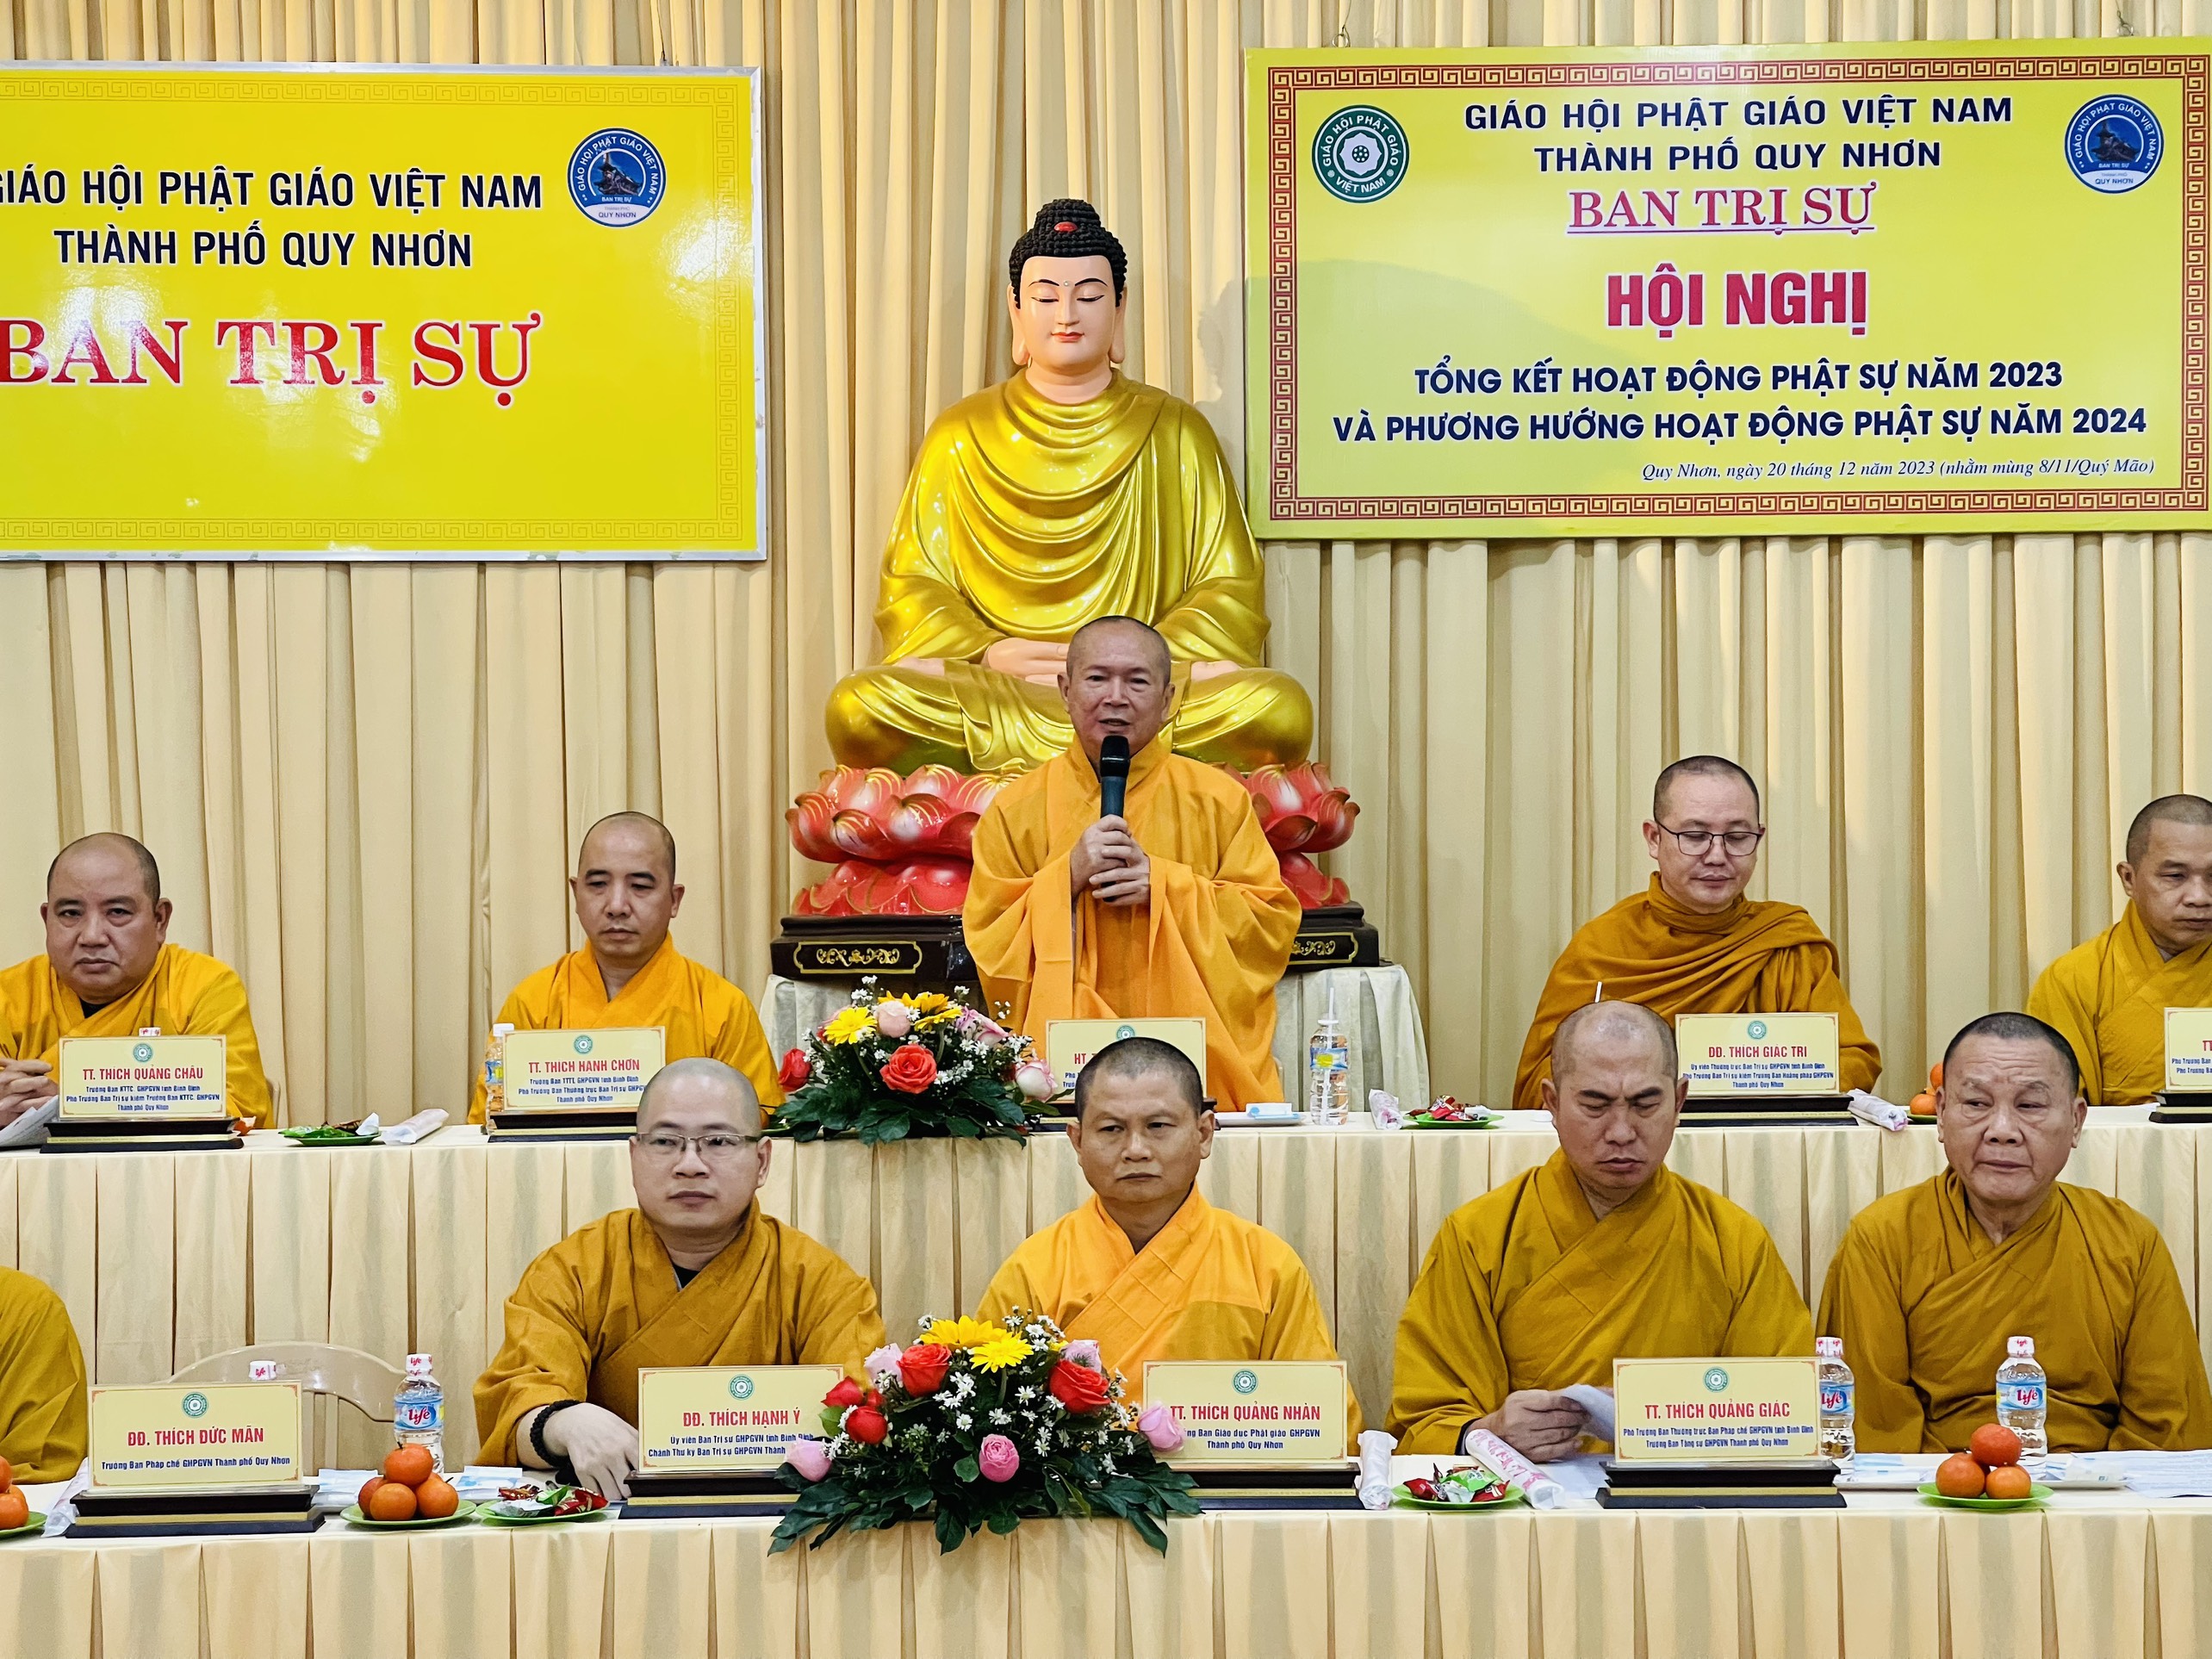 Hội nghị tổng kết Phật sự của Phật giáo Quy Nhơn năm 2023